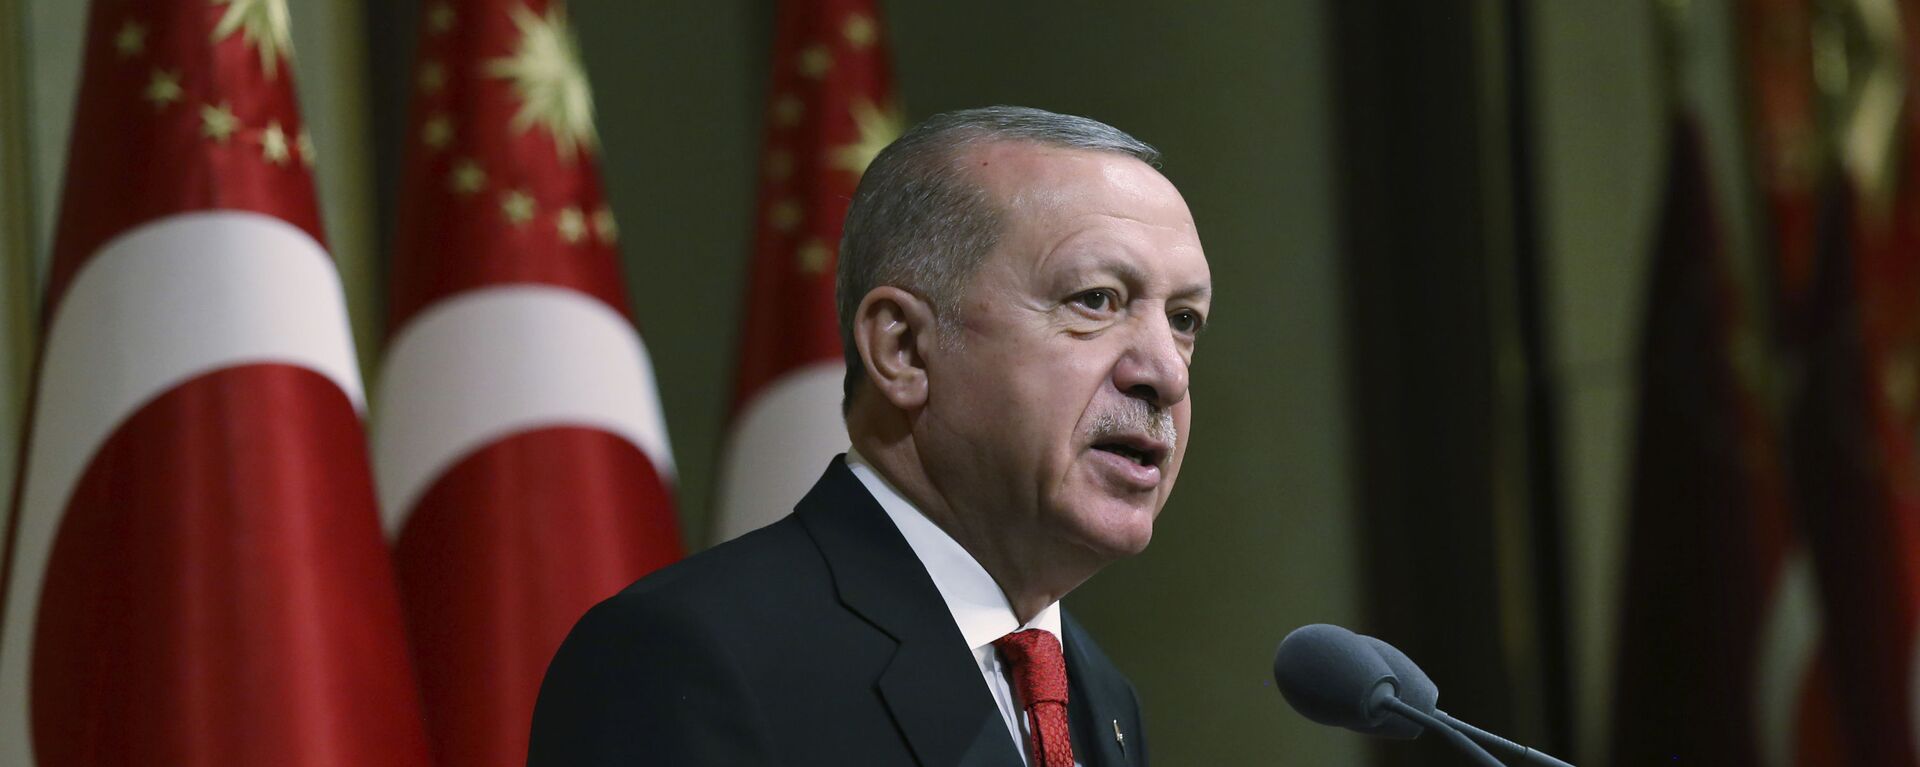 Tổng thống Thổ Nhĩ Kỳ Recep Tayyip Erdogan phát biểu tại dinh thự tổng thống ở Ankara - Sputnik Việt Nam, 1920, 14.05.2022